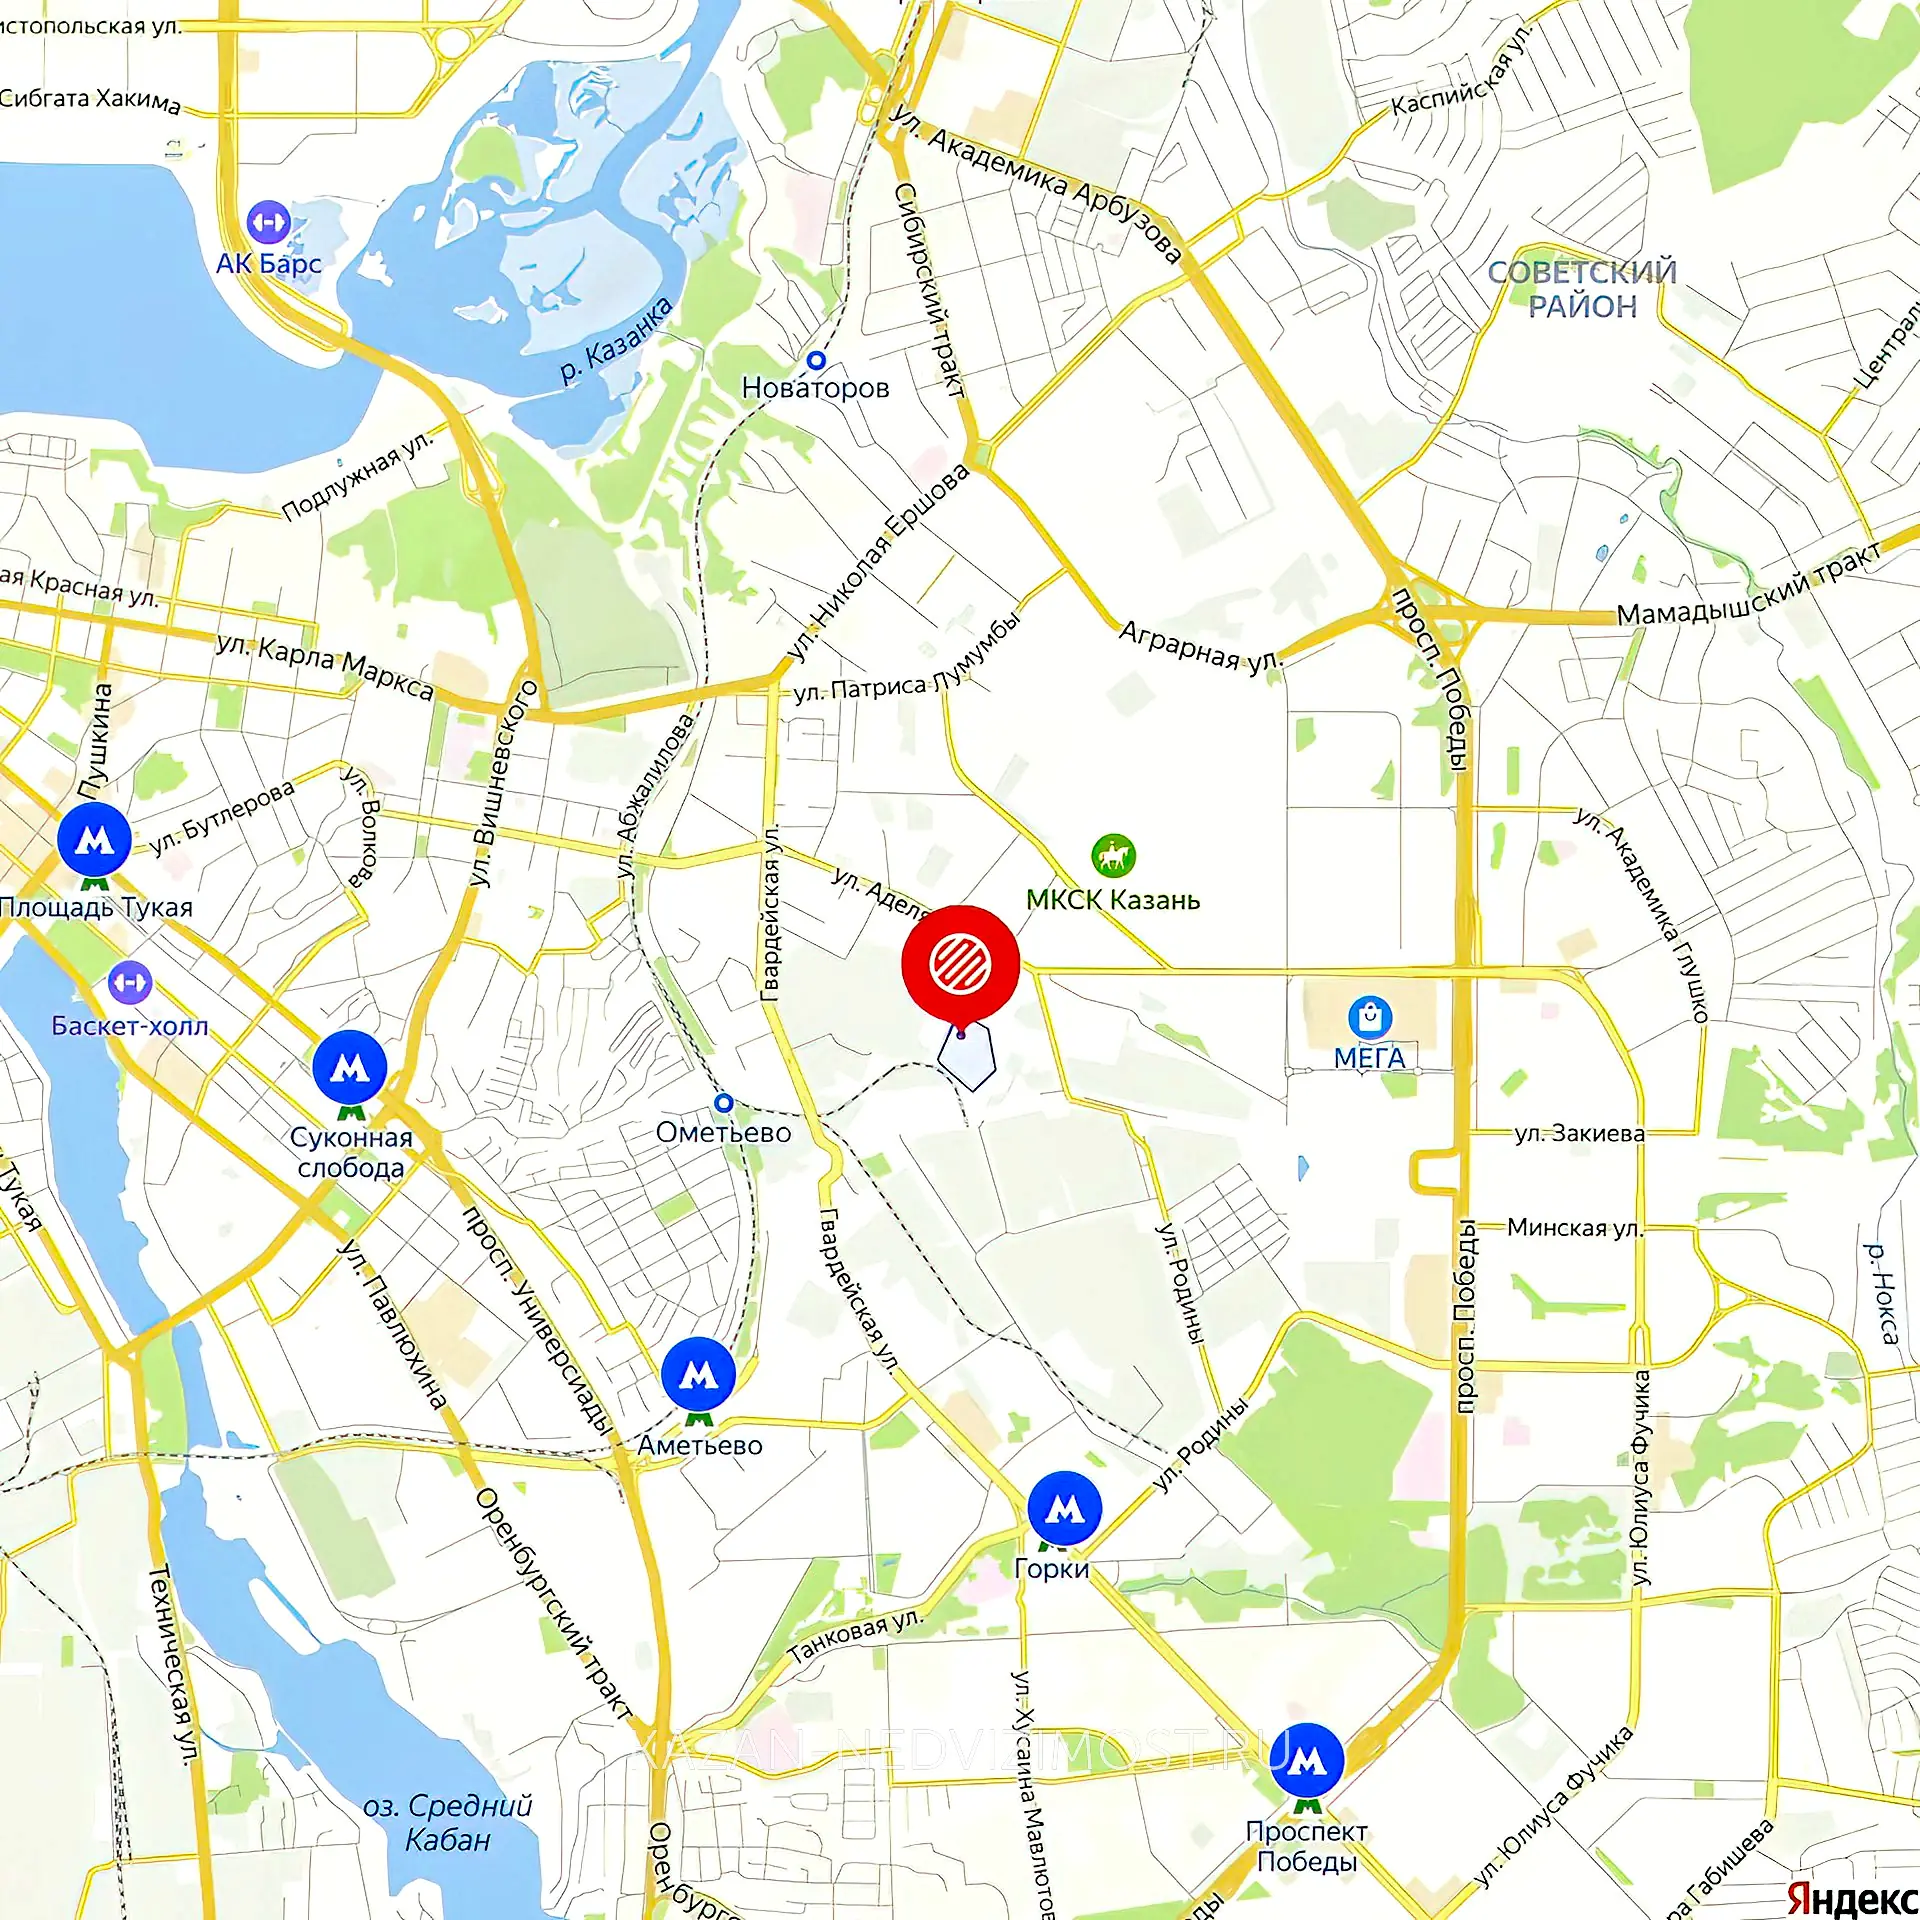 Расположение и маршрут на карте от ЖК Мечта до центра города